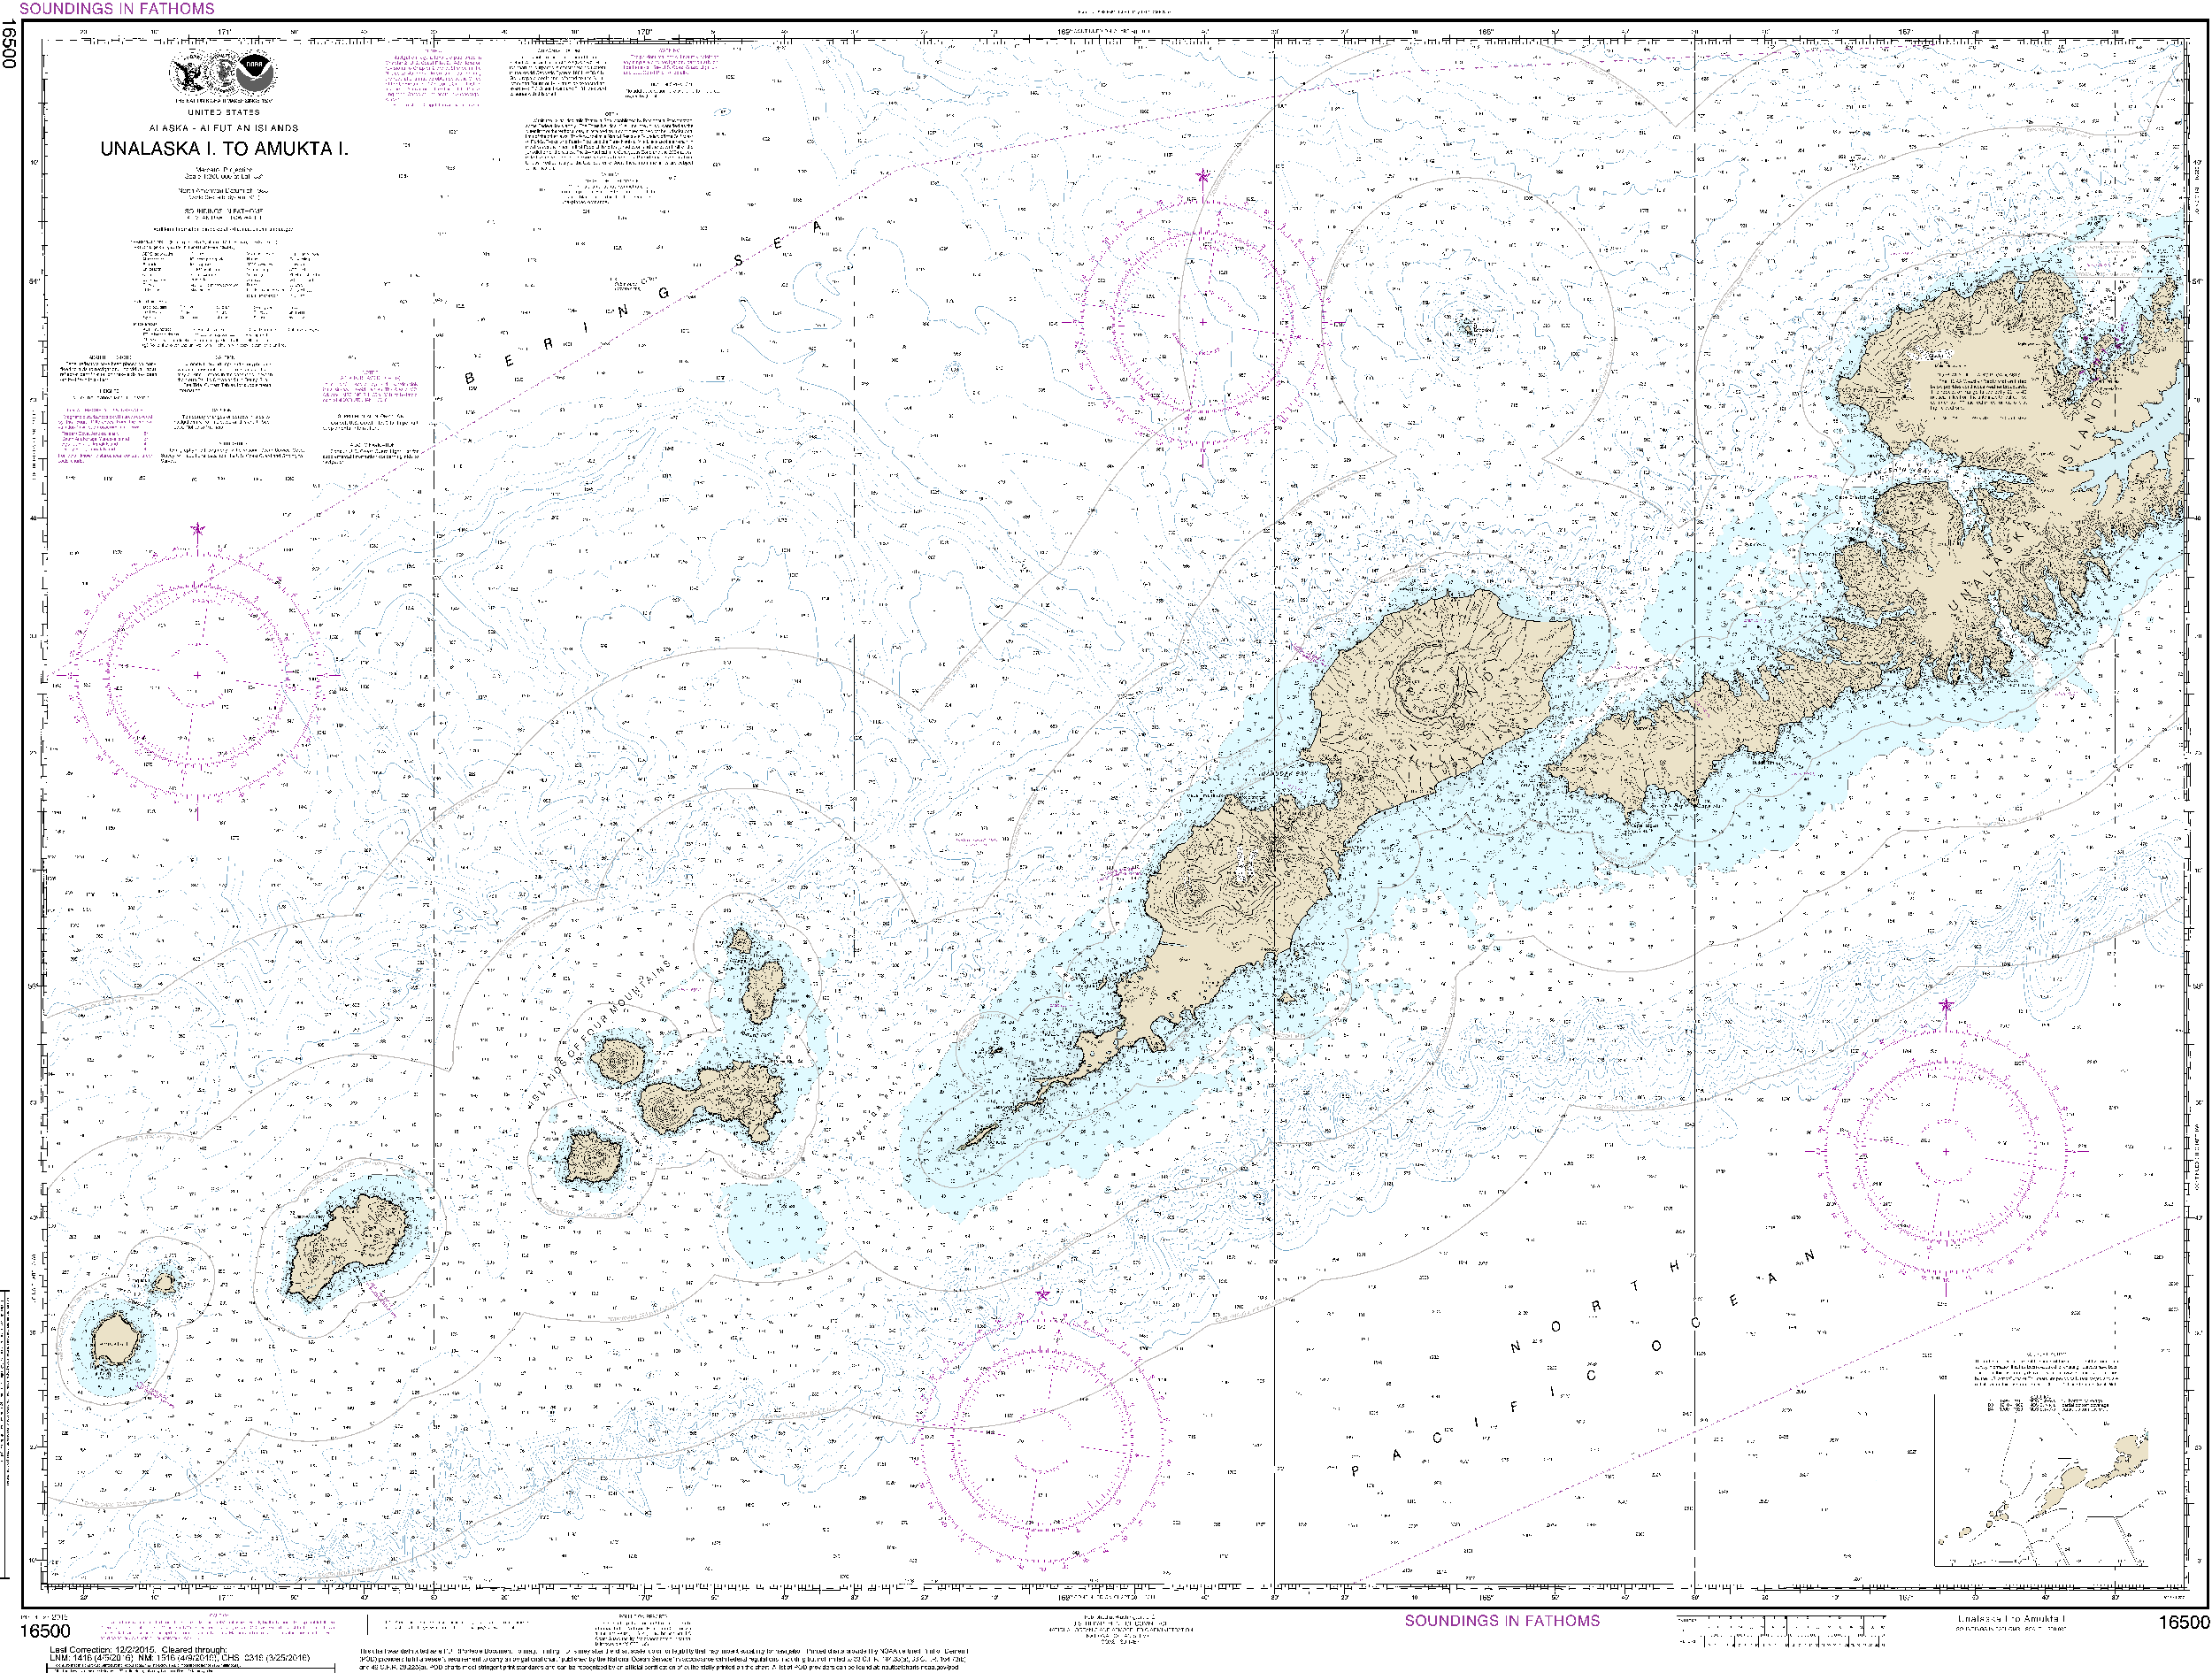 NOAA Nautical Chart 16500: Unalaska l. to Amukta l.